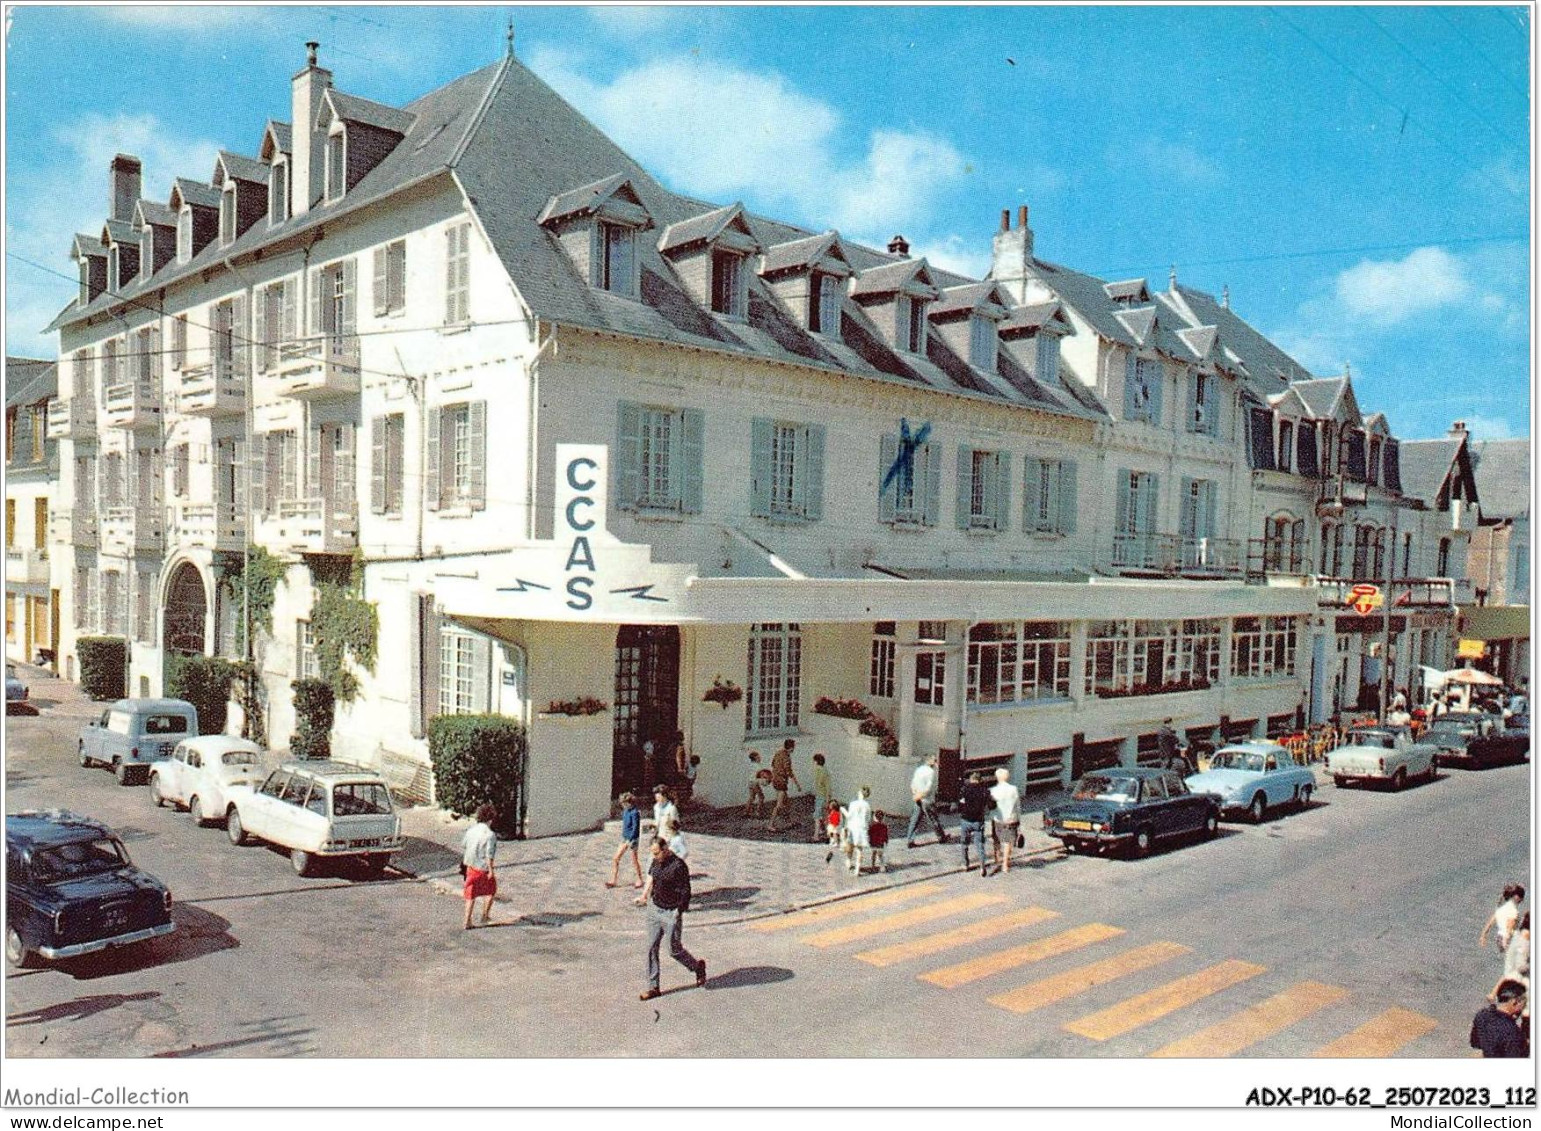 ADXP10-62-0876 - MERLIMONT-PLAGE - Le C C A S - Montreuil